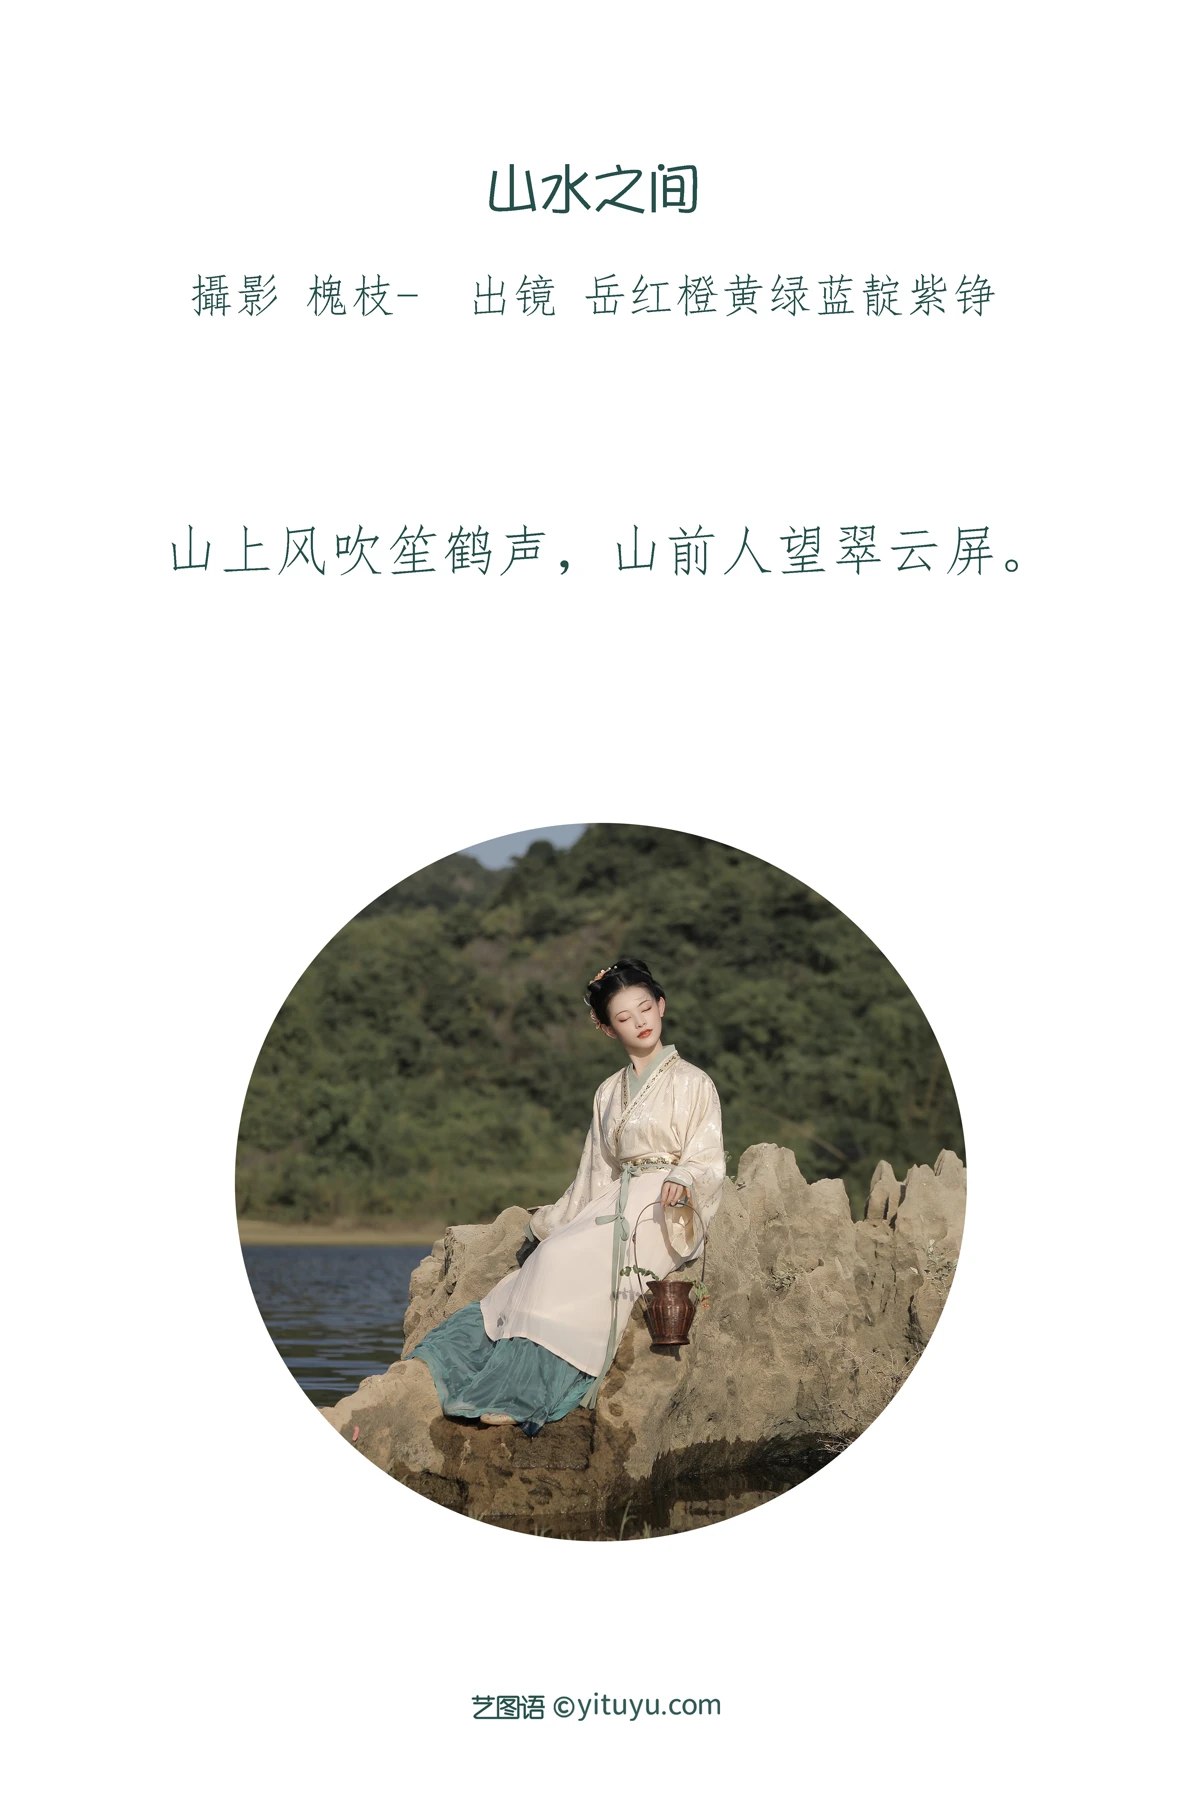 YiTuYu艺图语 Vol 1933 Yue Hong Cheng Huang Lǜ Lan Dian Zi Zheng 0001 1130783117.jpg